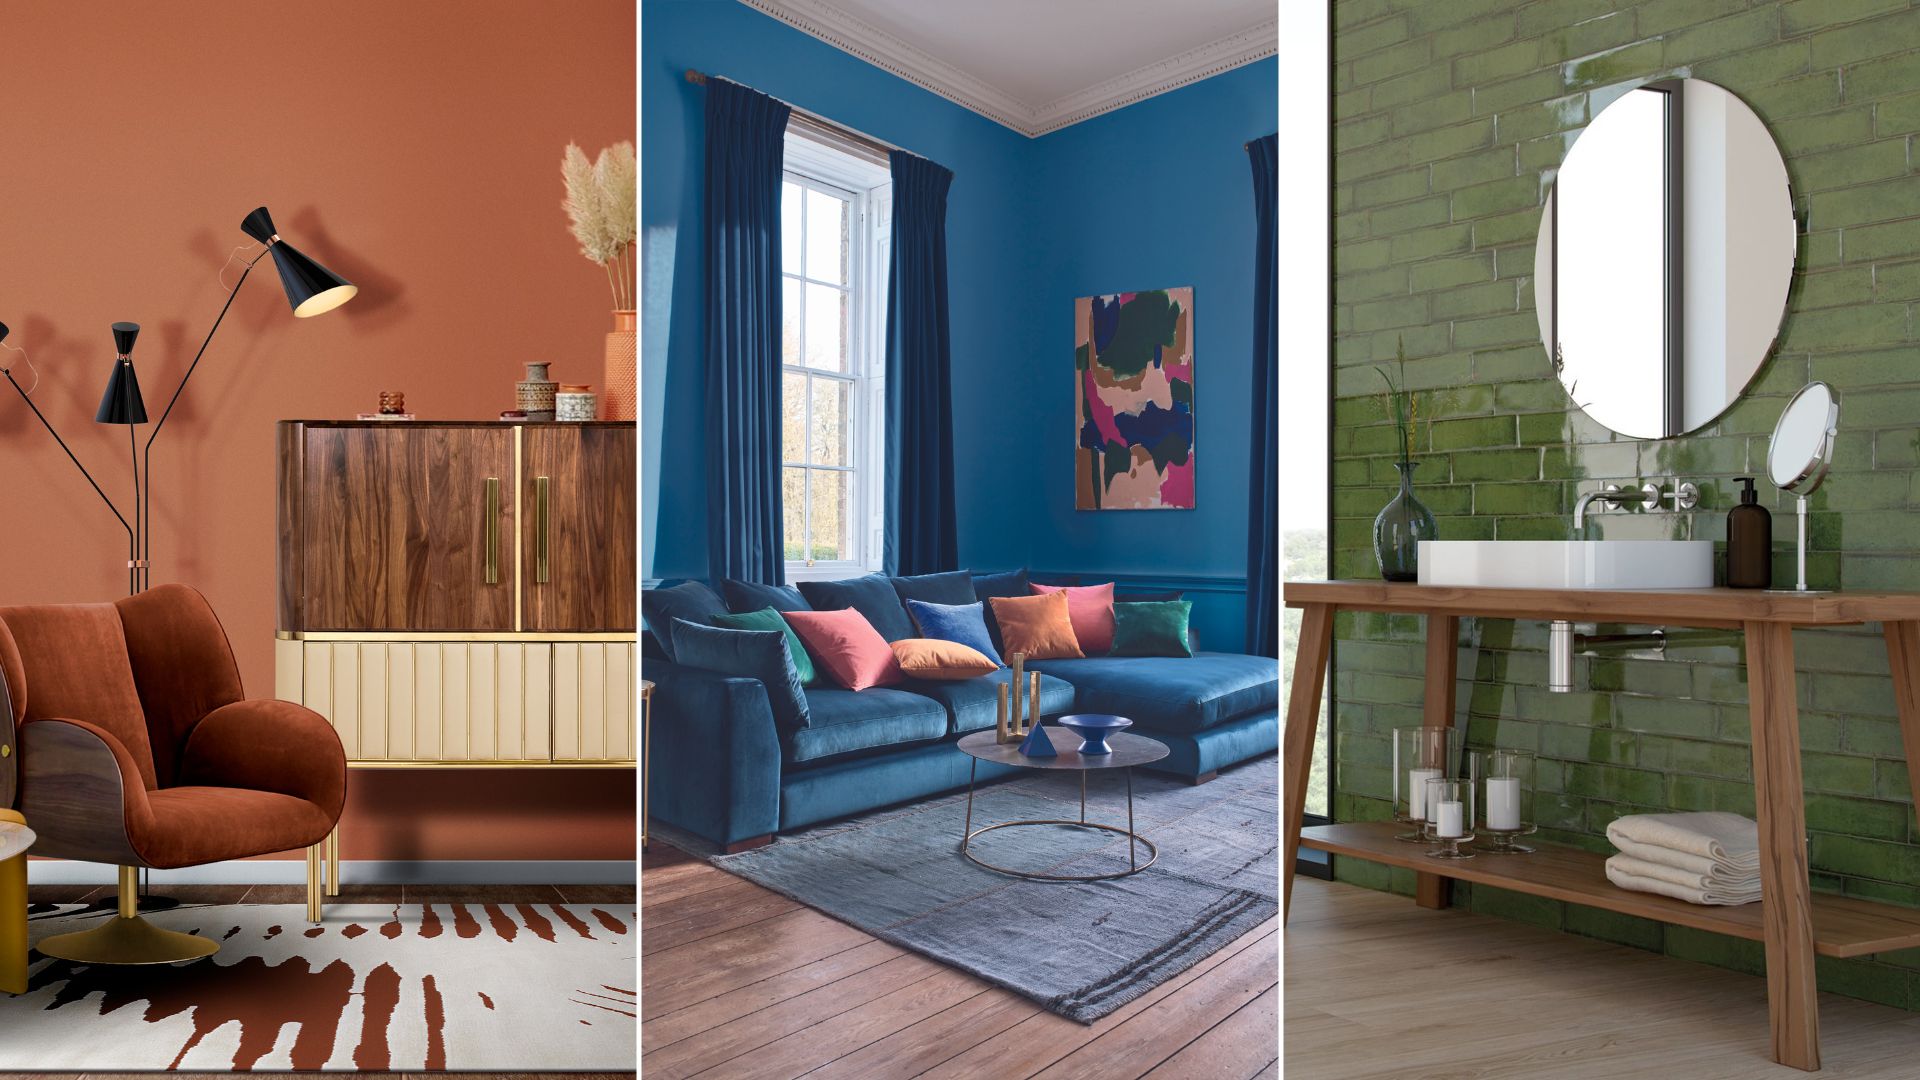 Cobalt Blue and Jade Green Color Scheme for Living Room